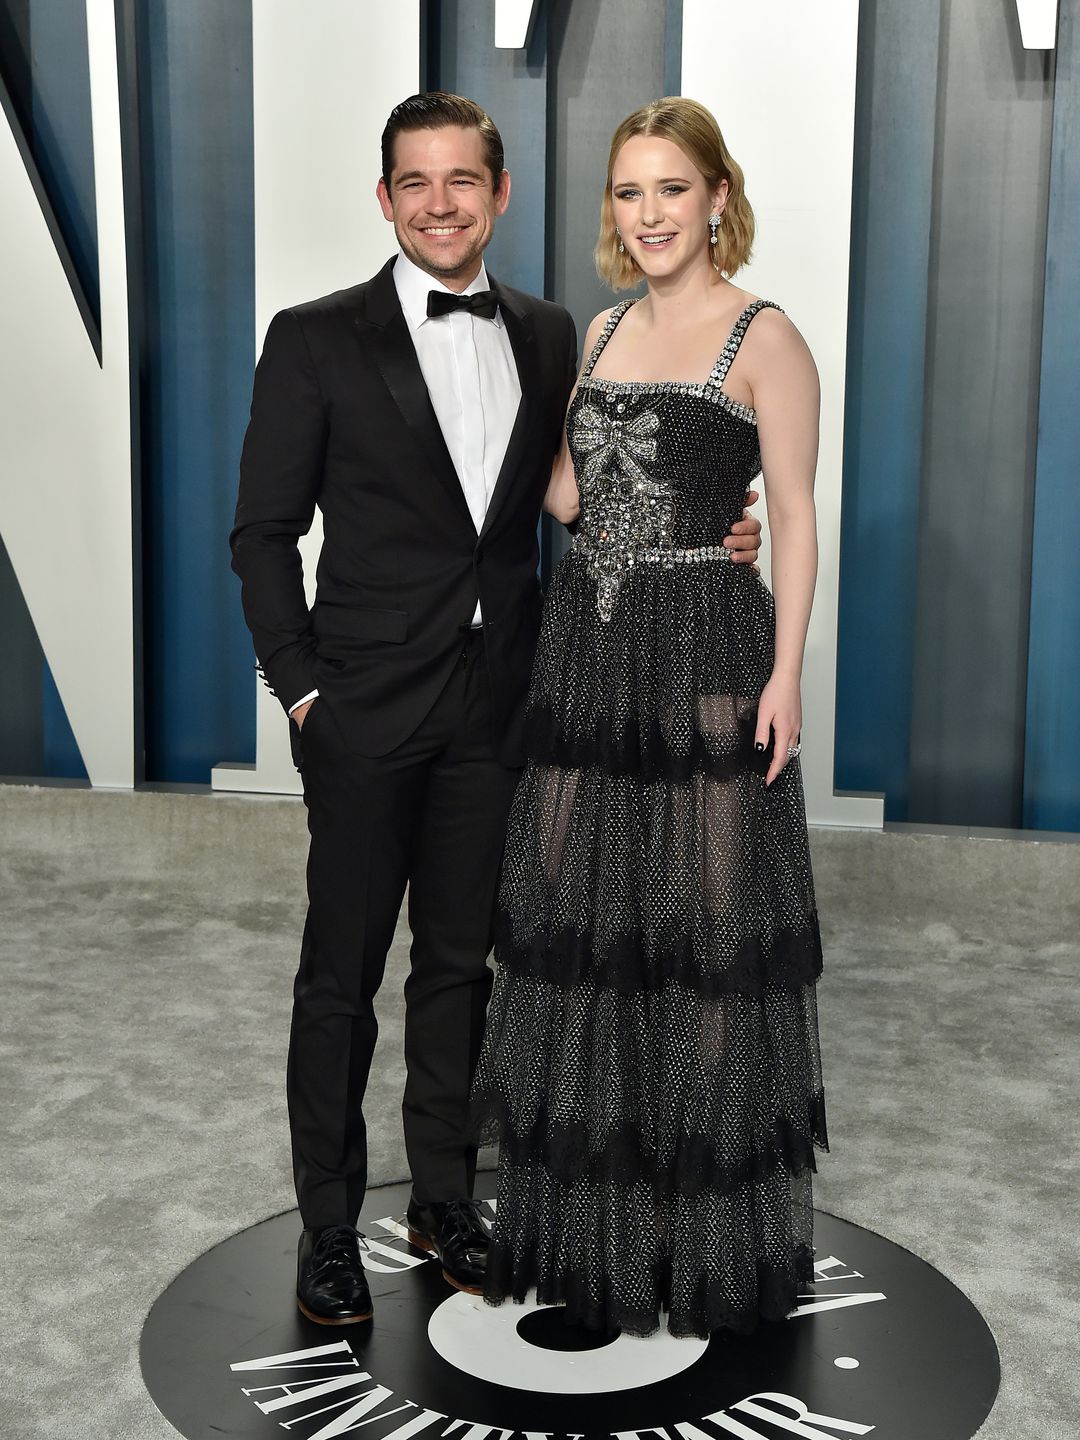 Jason Ralph and Rachel Brosnahan pose on carpet at Vanity Fair Oscars party